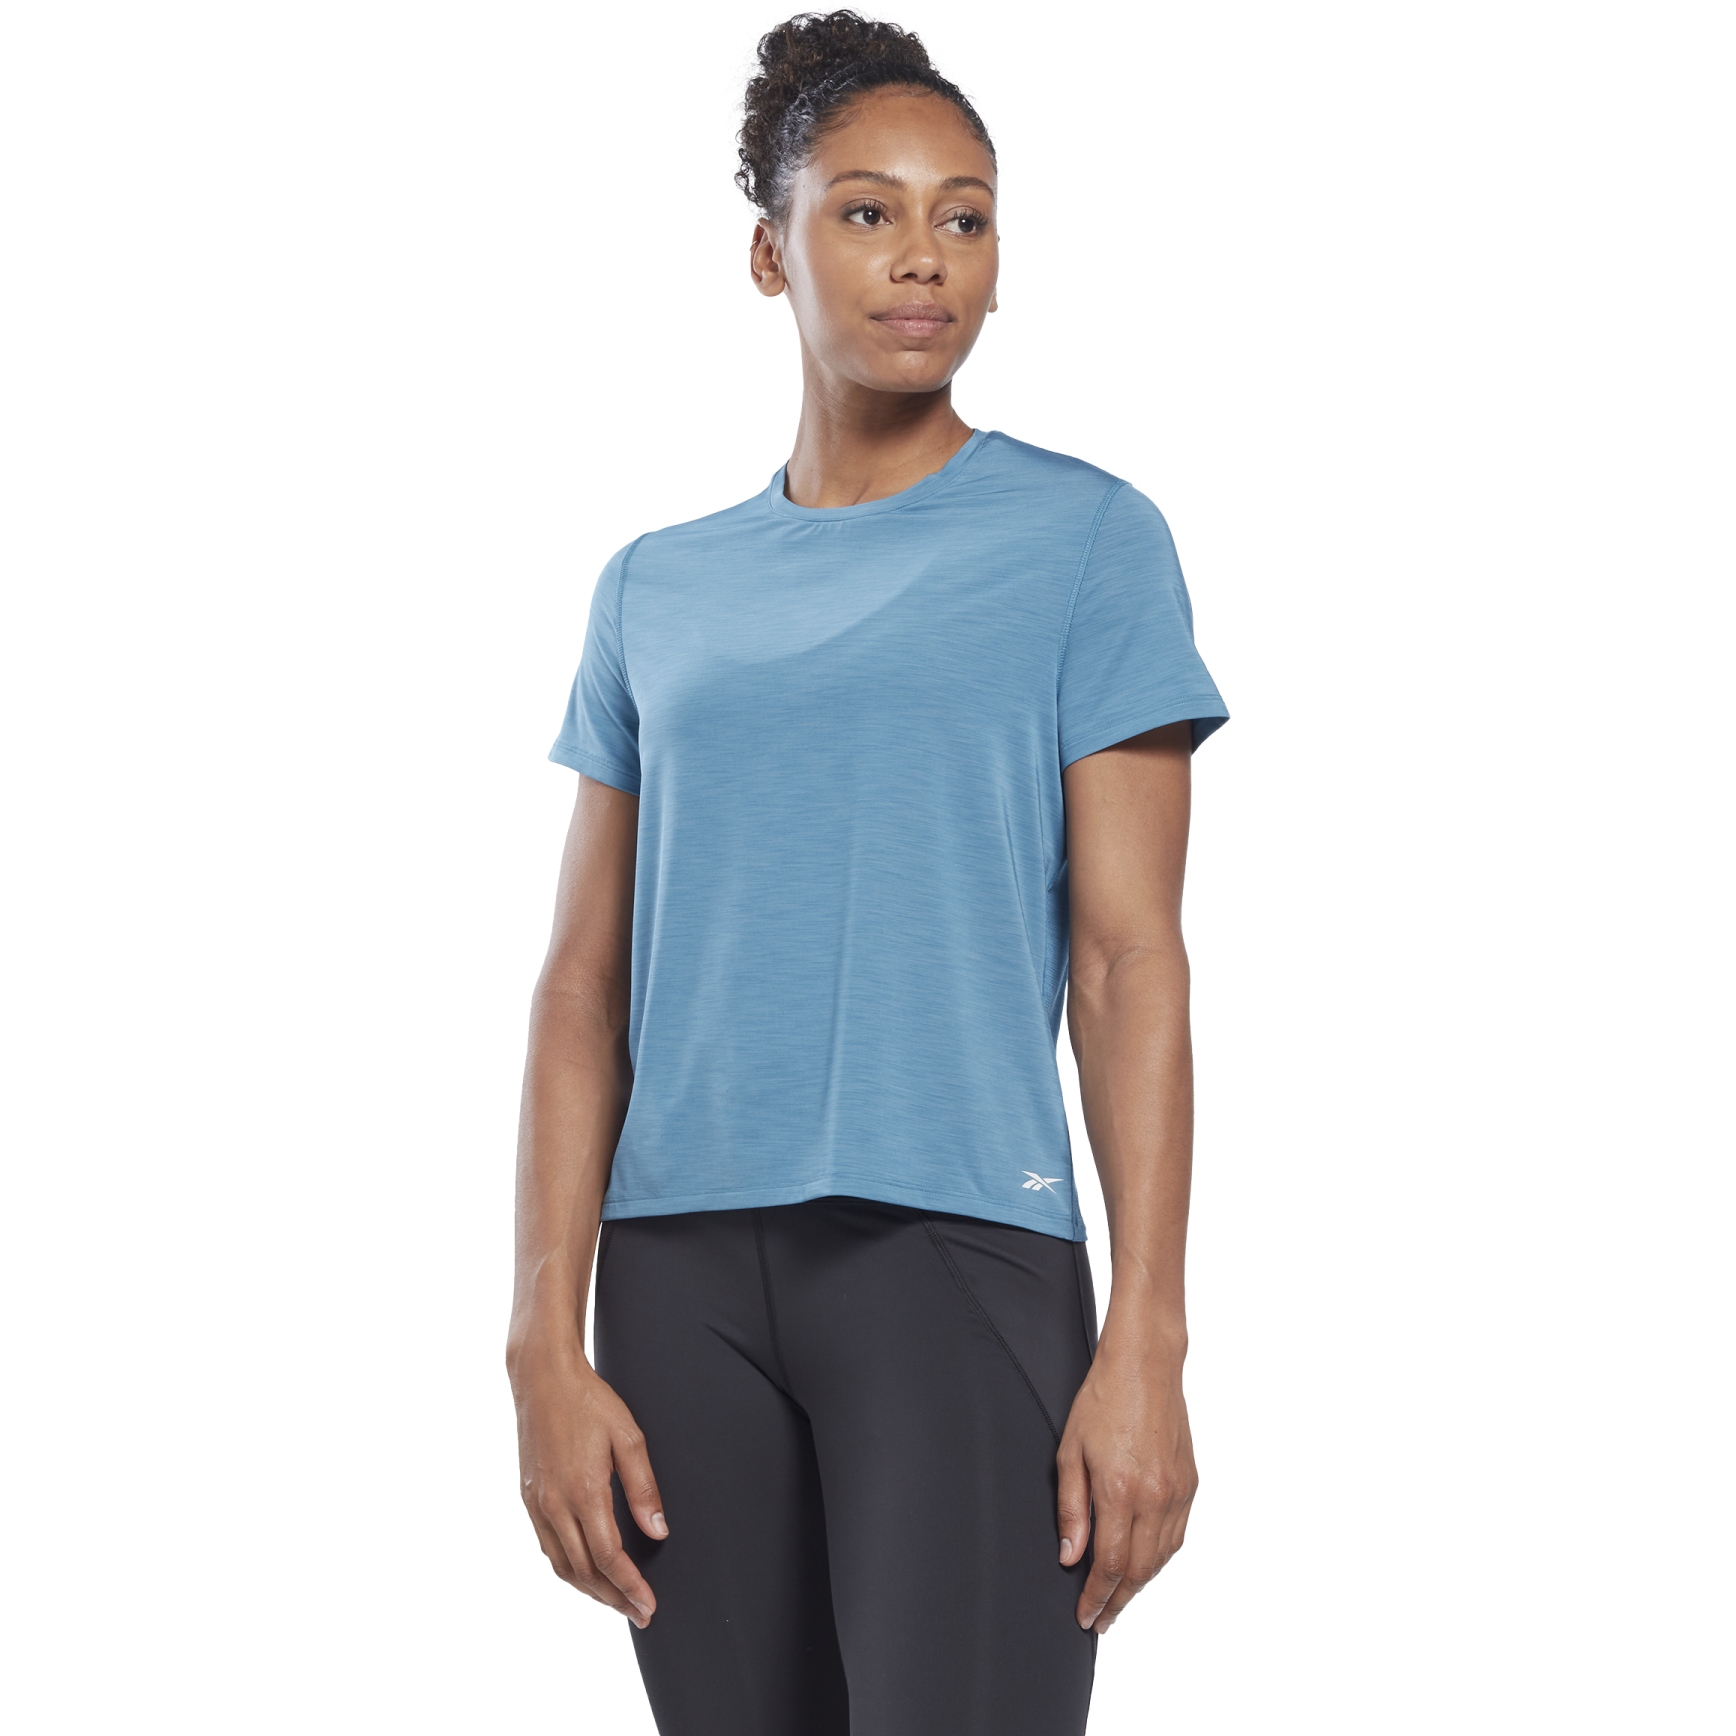 Produktbild von Reebok ACTIVCHILL Athlethic T-Shirt Damen - steely blue